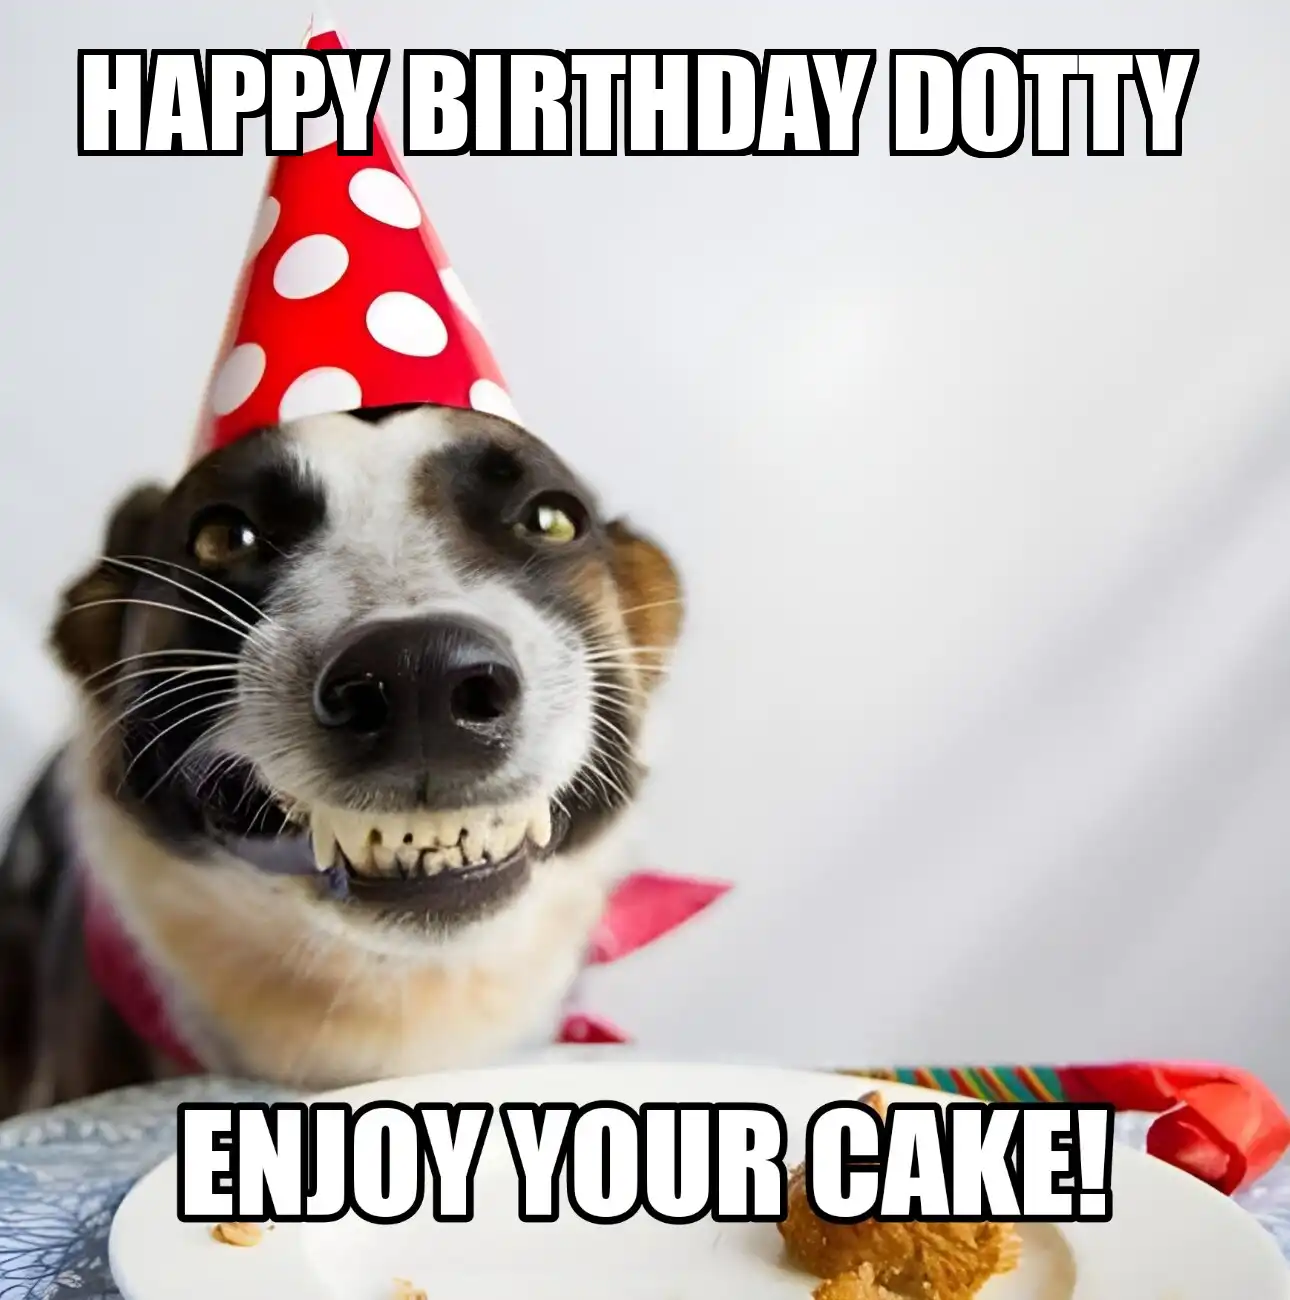 Happy Birthday Dotty Enjoy Your Cake Dog Meme